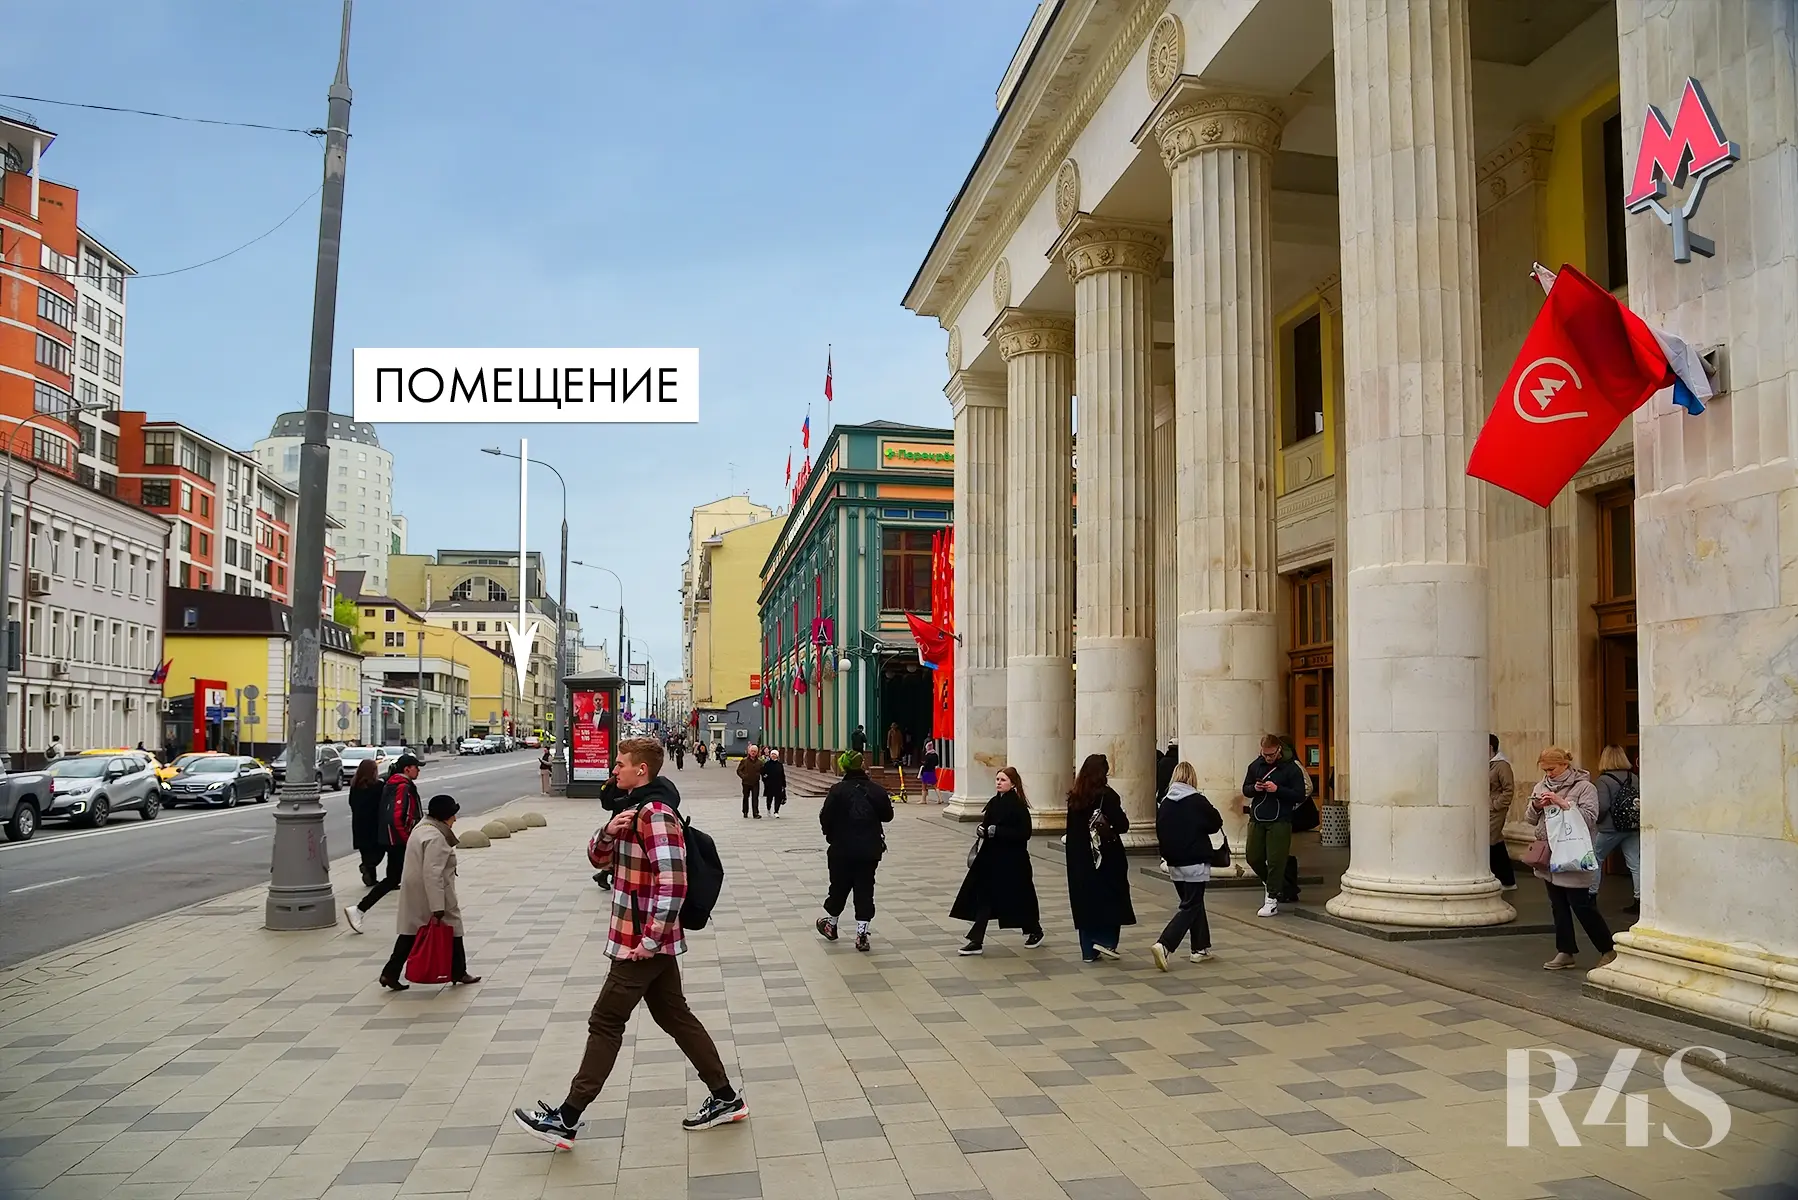 Продажа торгового помещения площадью 1060 м2 в Москве: Новослободская, 19с1 R4S | Realty4Sale